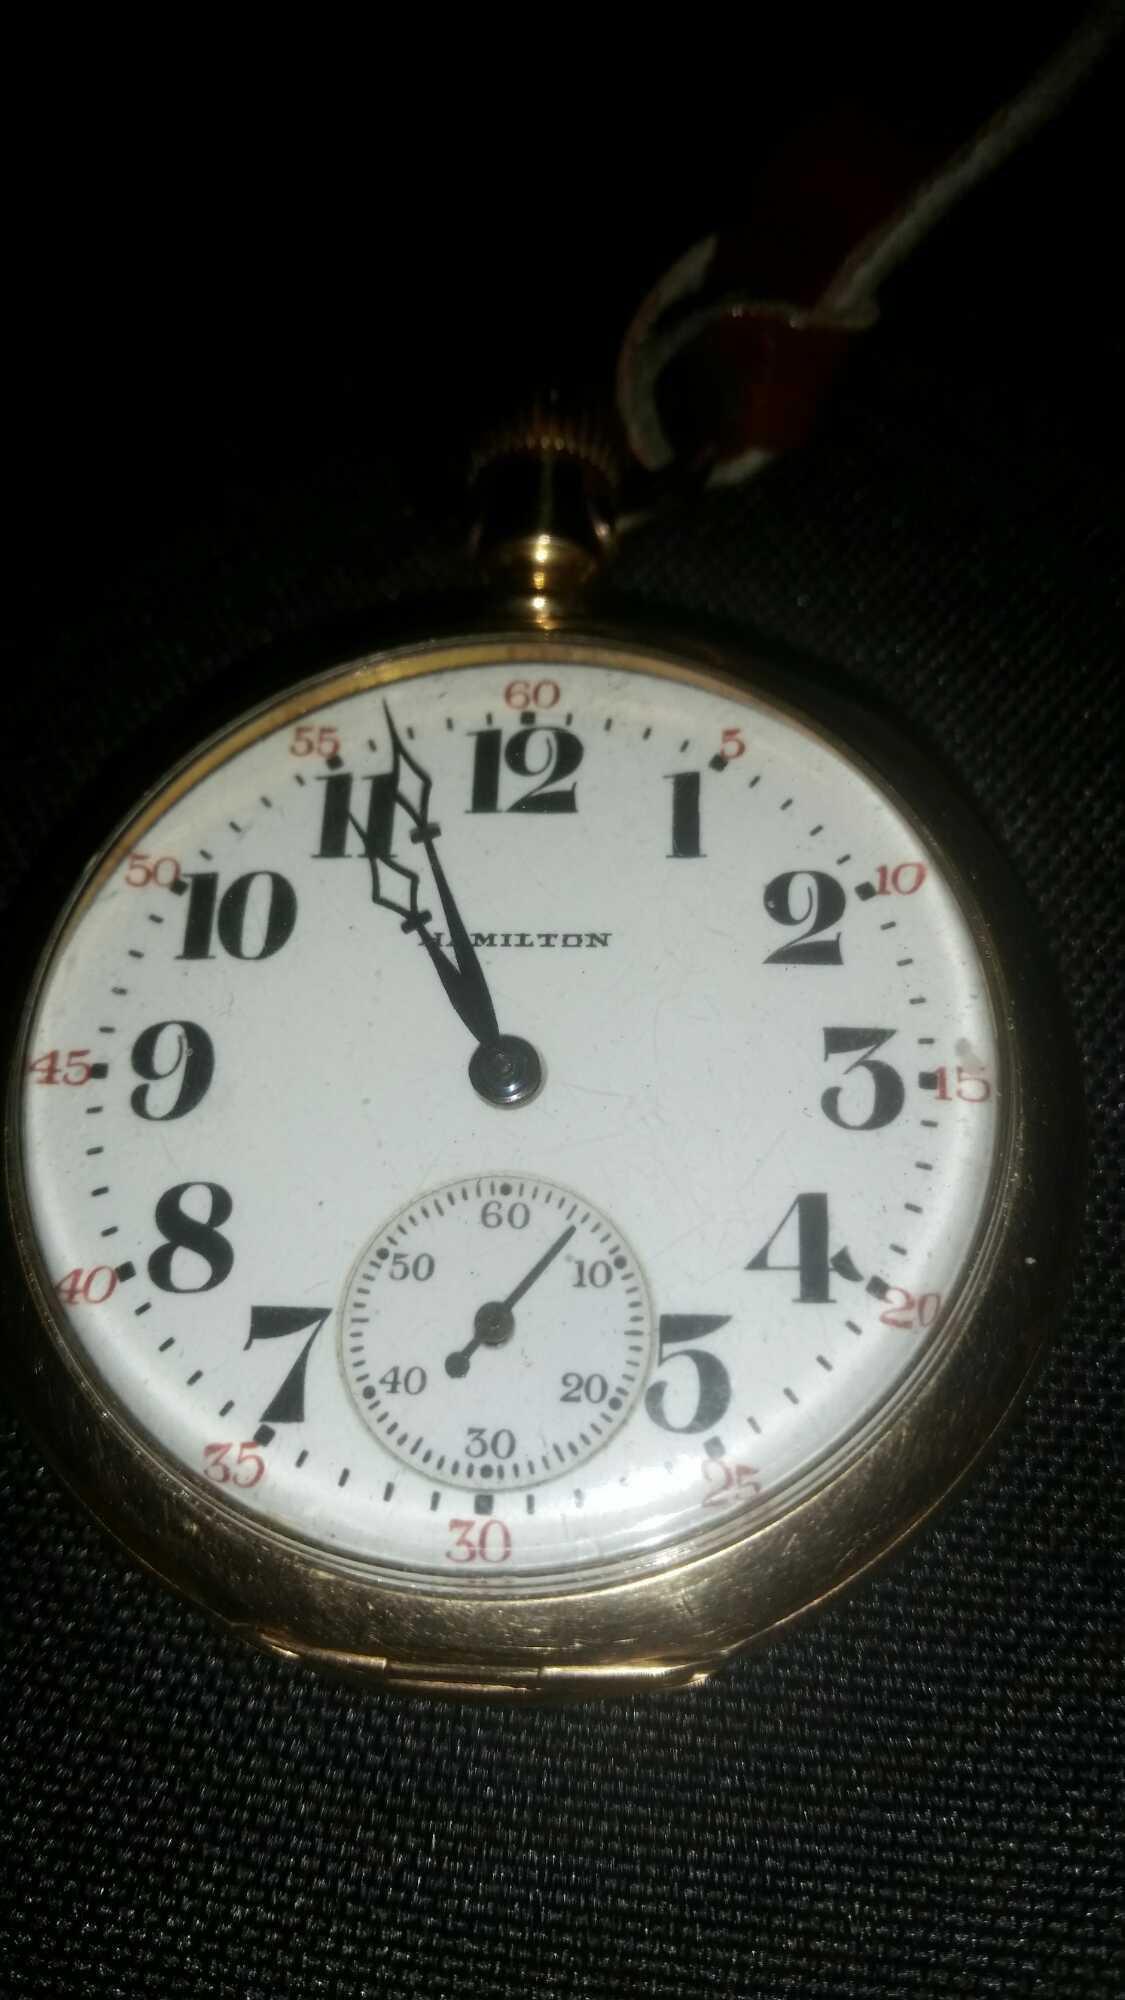 Hamilton 974, 17 jewel pocket watch